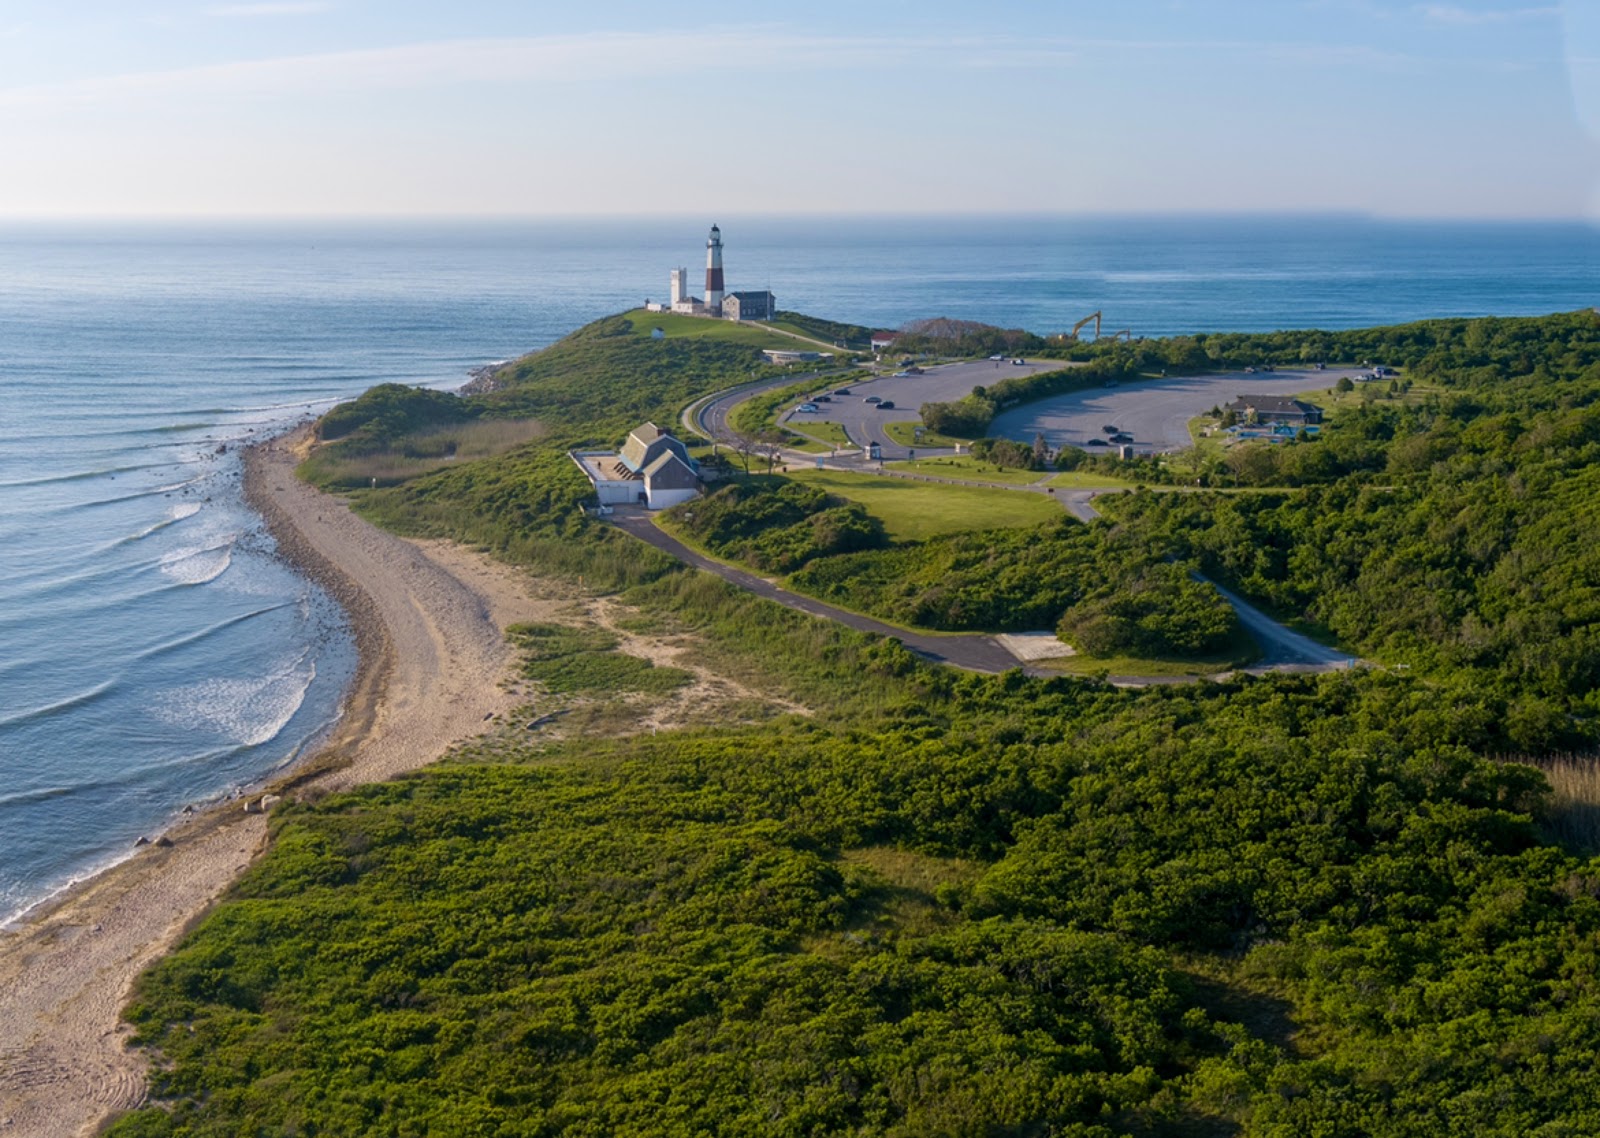 Montauk Lighthouse'in fotoğrafı geniş plaj ile birlikte